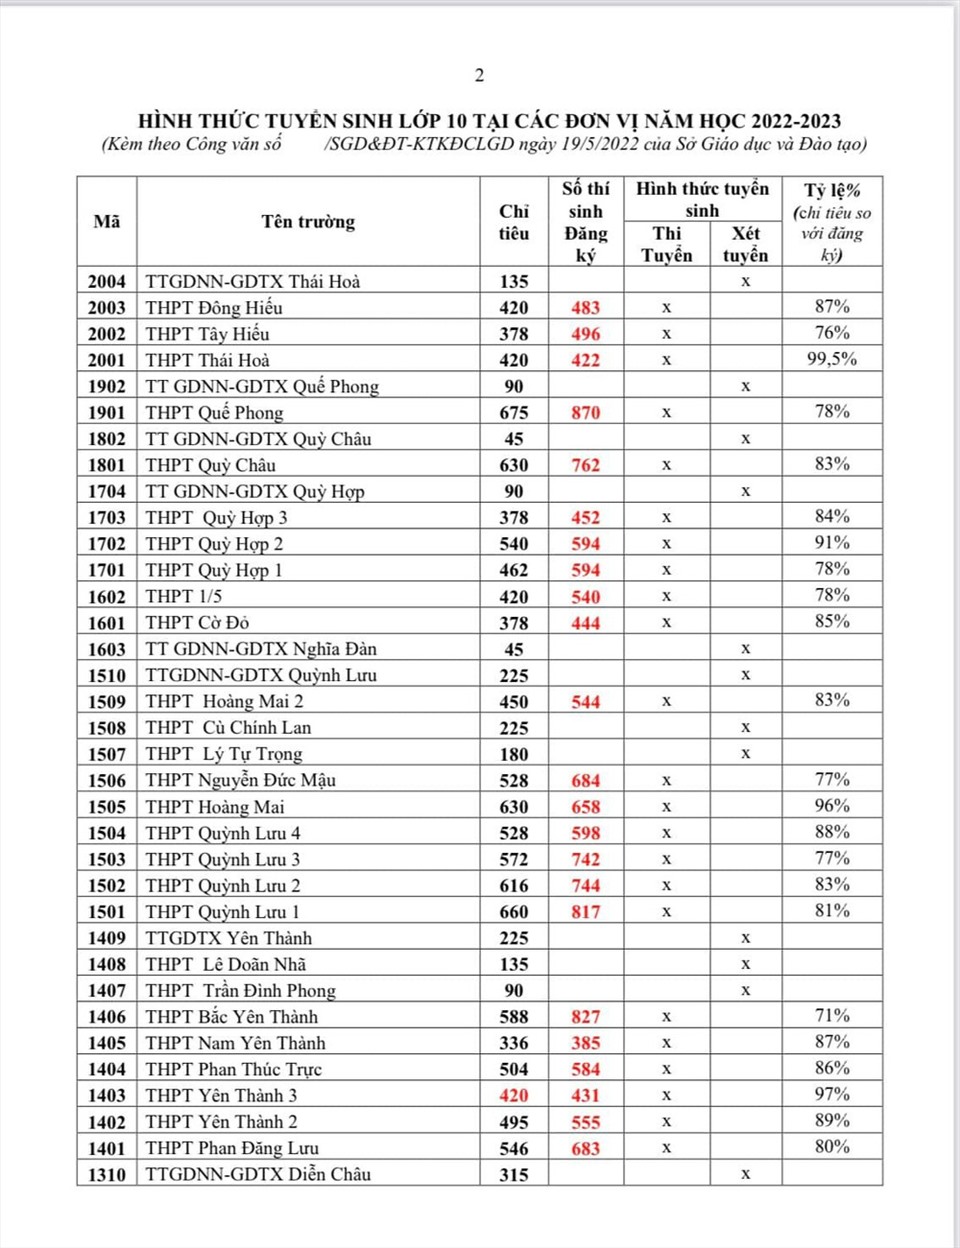 Tỷ lệ trúng tuyển của các trường THPT tại Nghệ An năm học 2022 - 2023. Ảnh: MH